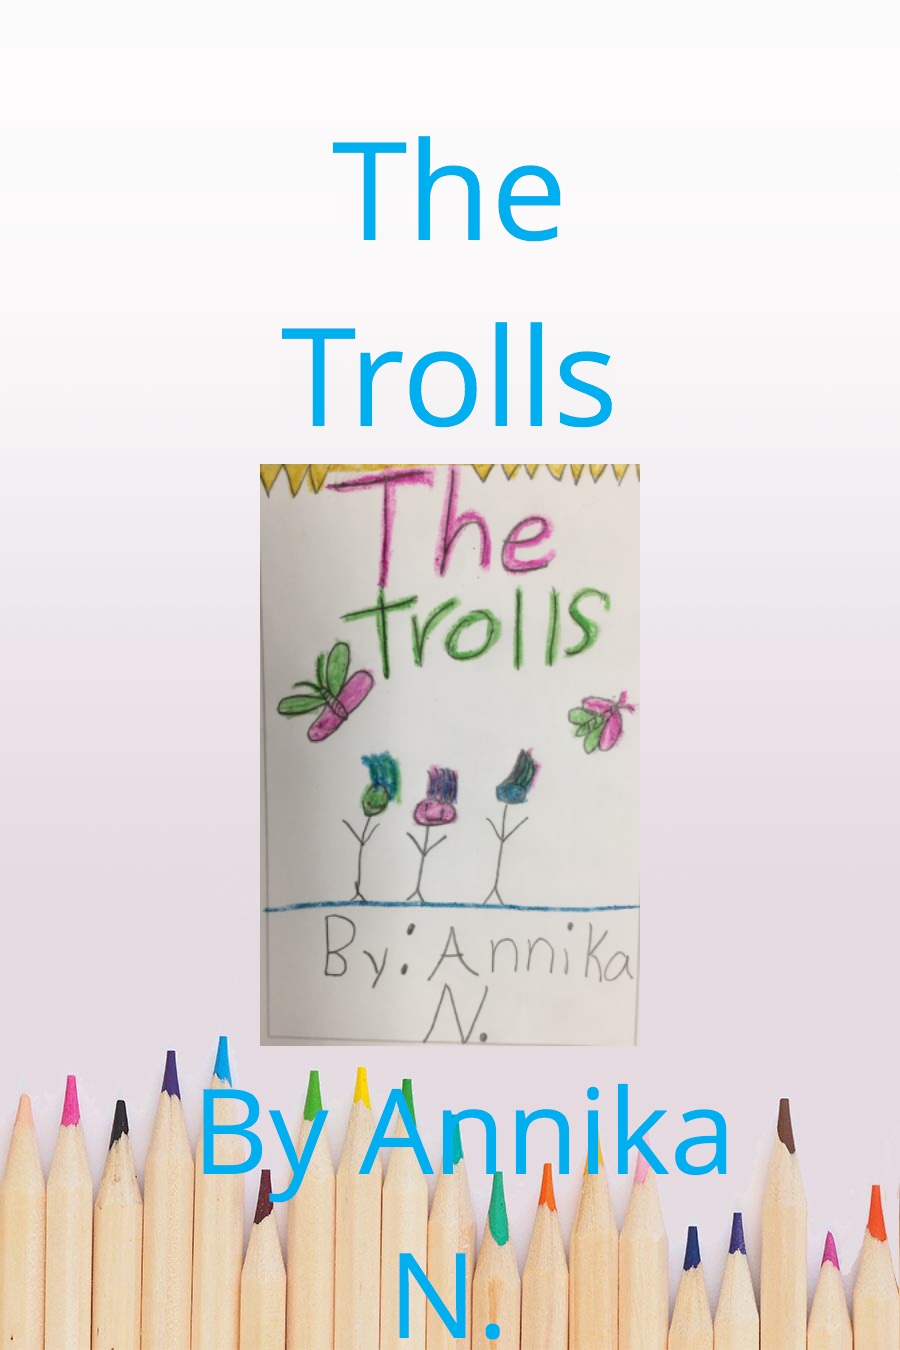 The Trolls by Annika N